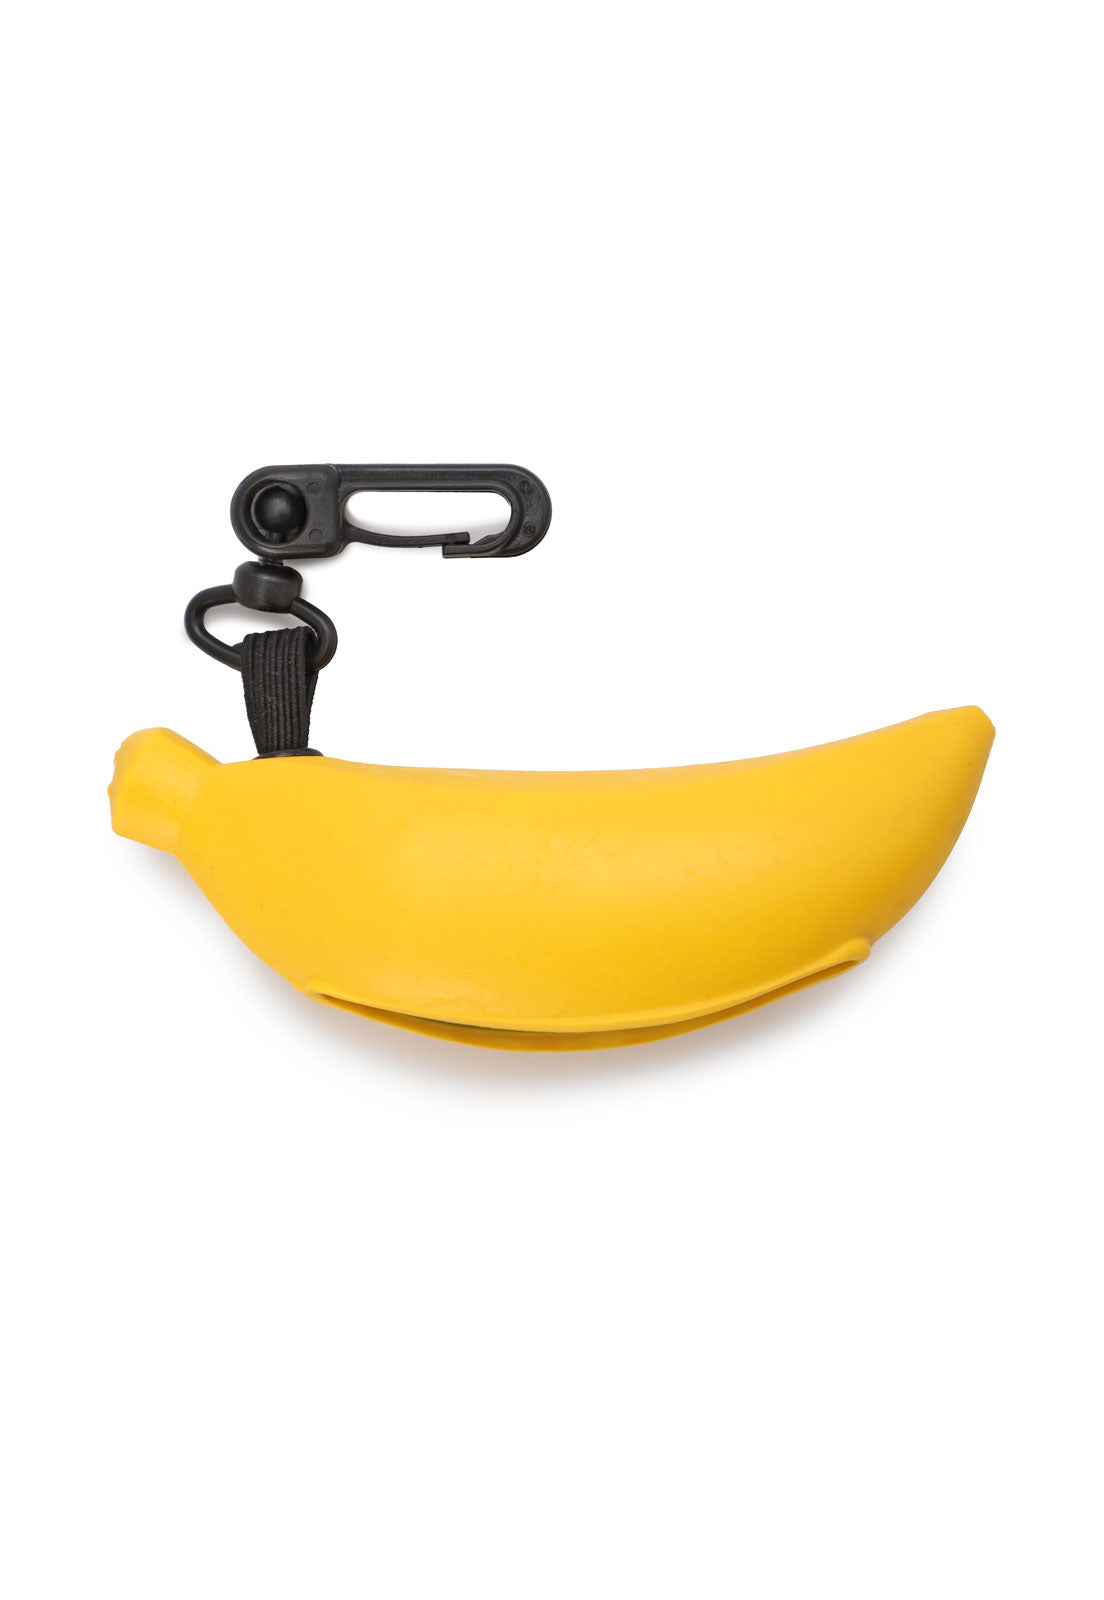 Pañito Salva Mugre - Banano